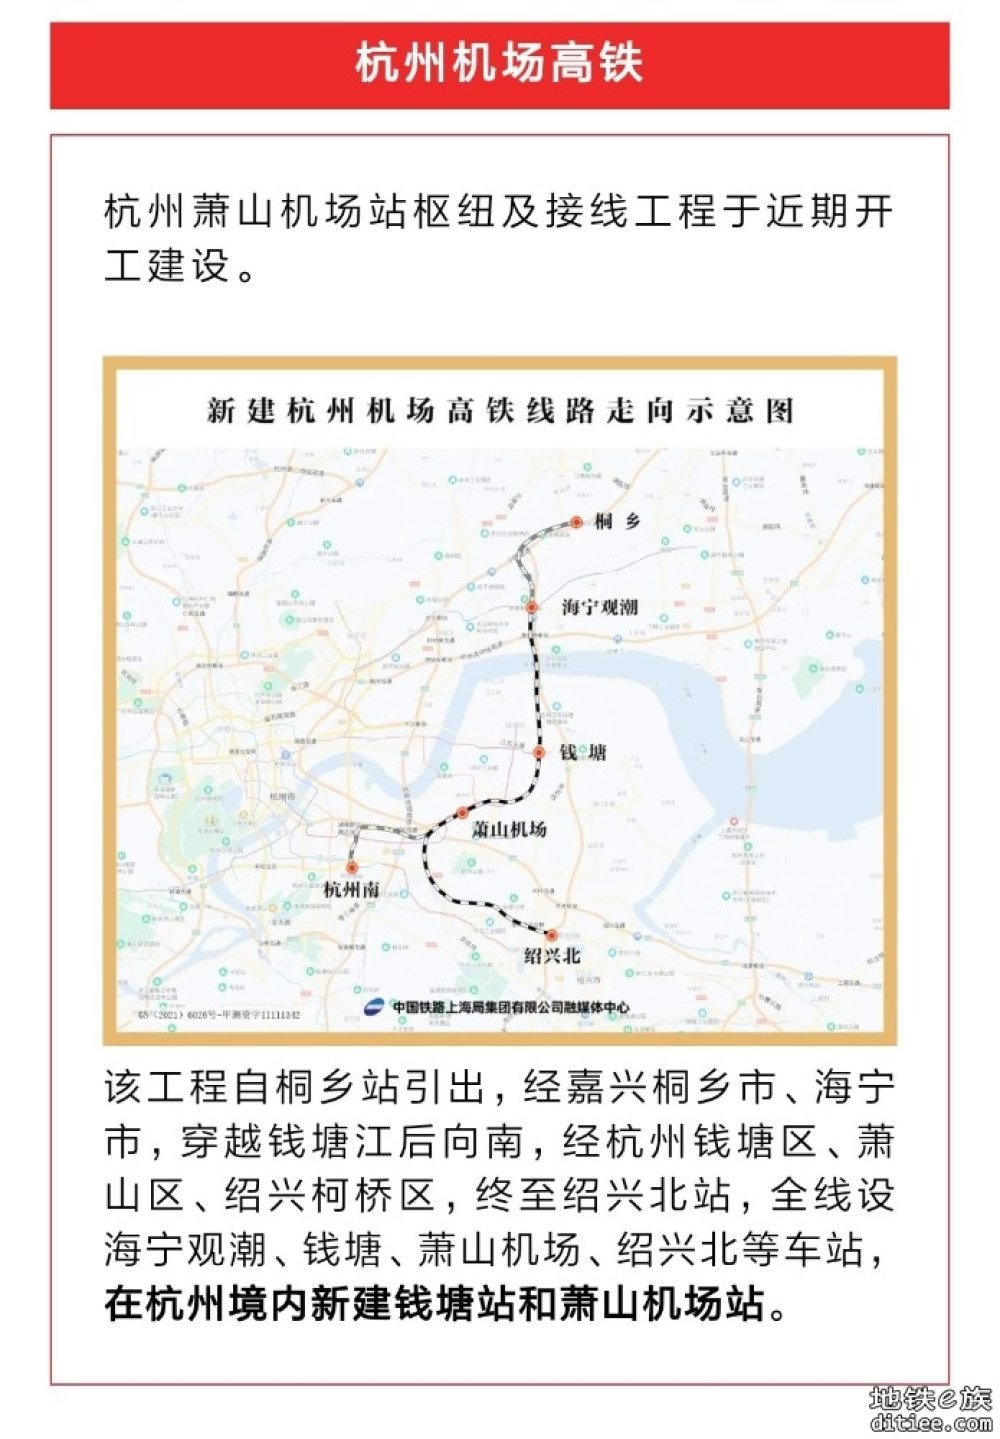 杭州机场高铁、杭温高铁、杭衢铁路迎来重要进展！杭州将新建哪些高铁站？